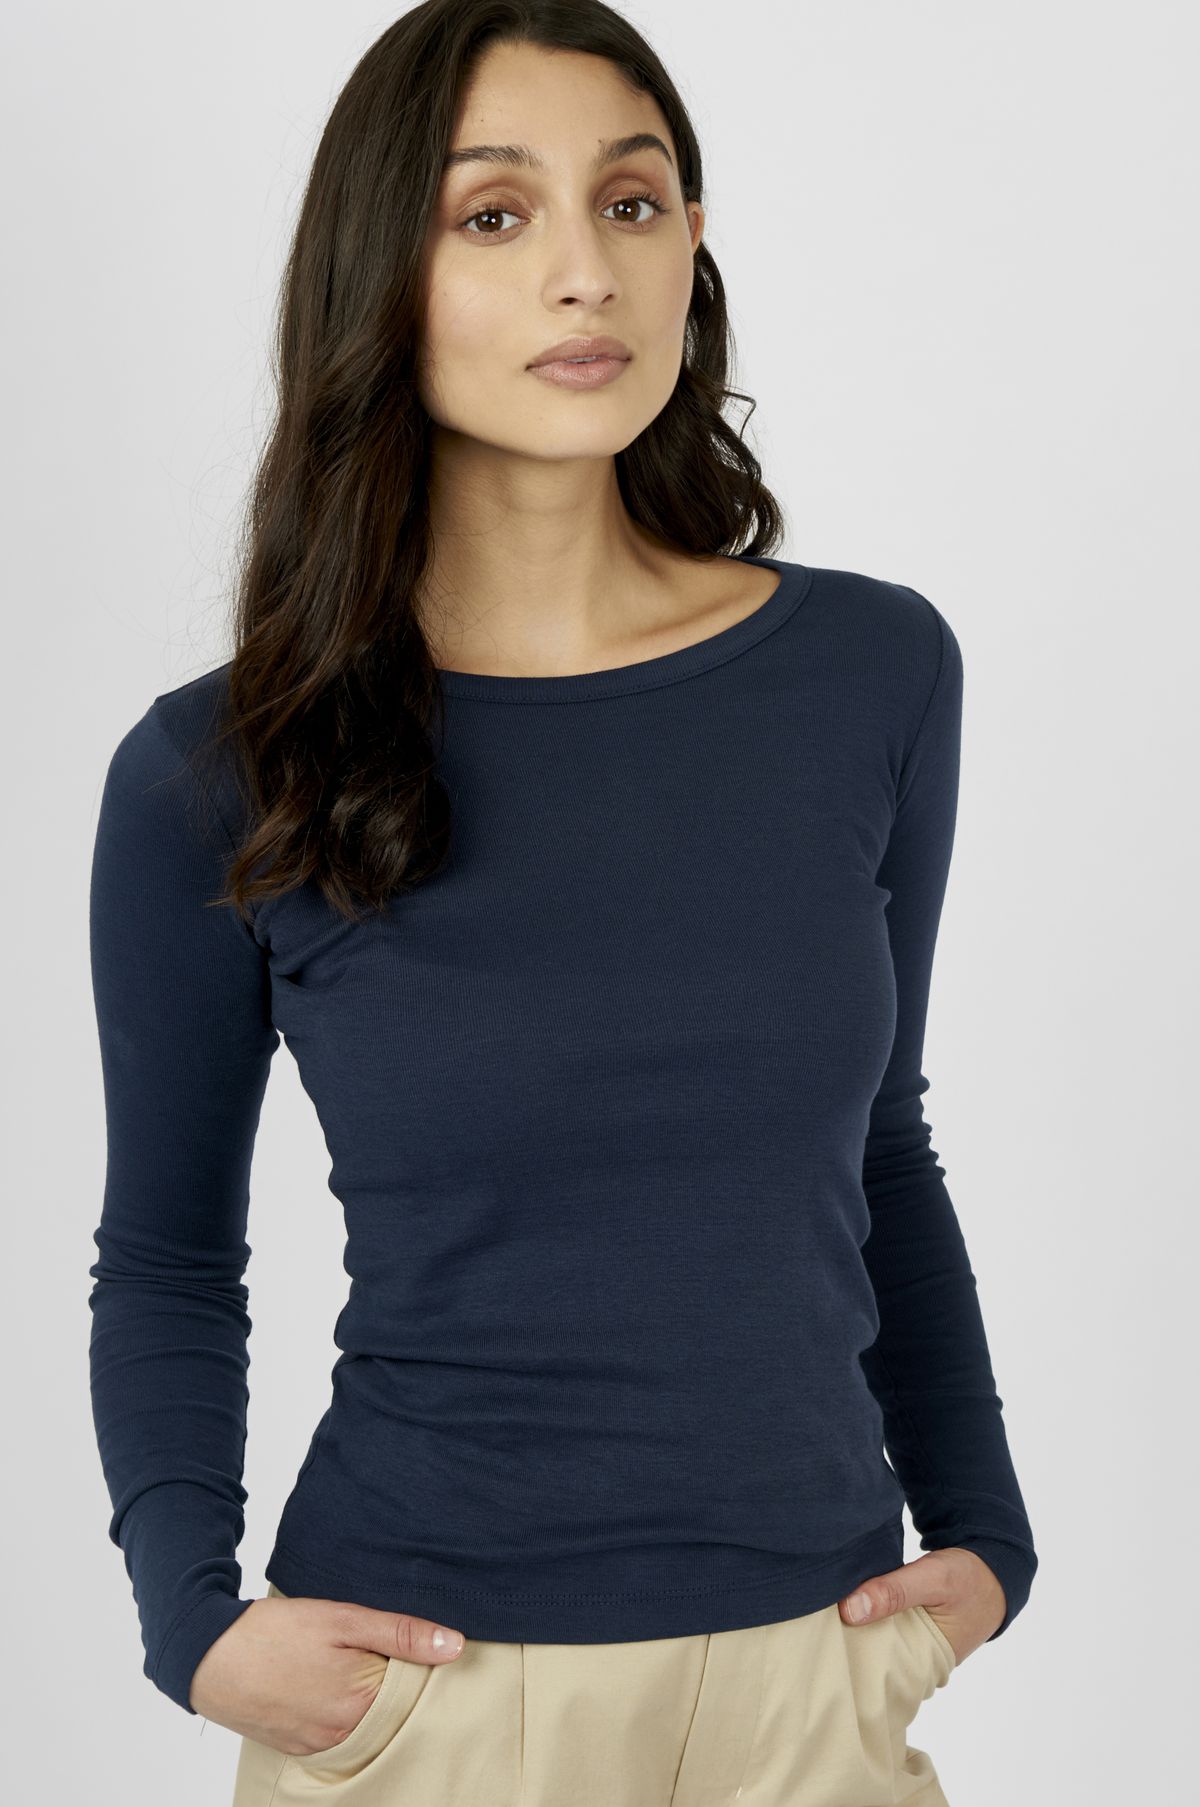 A model in a blue longsleeve shirt